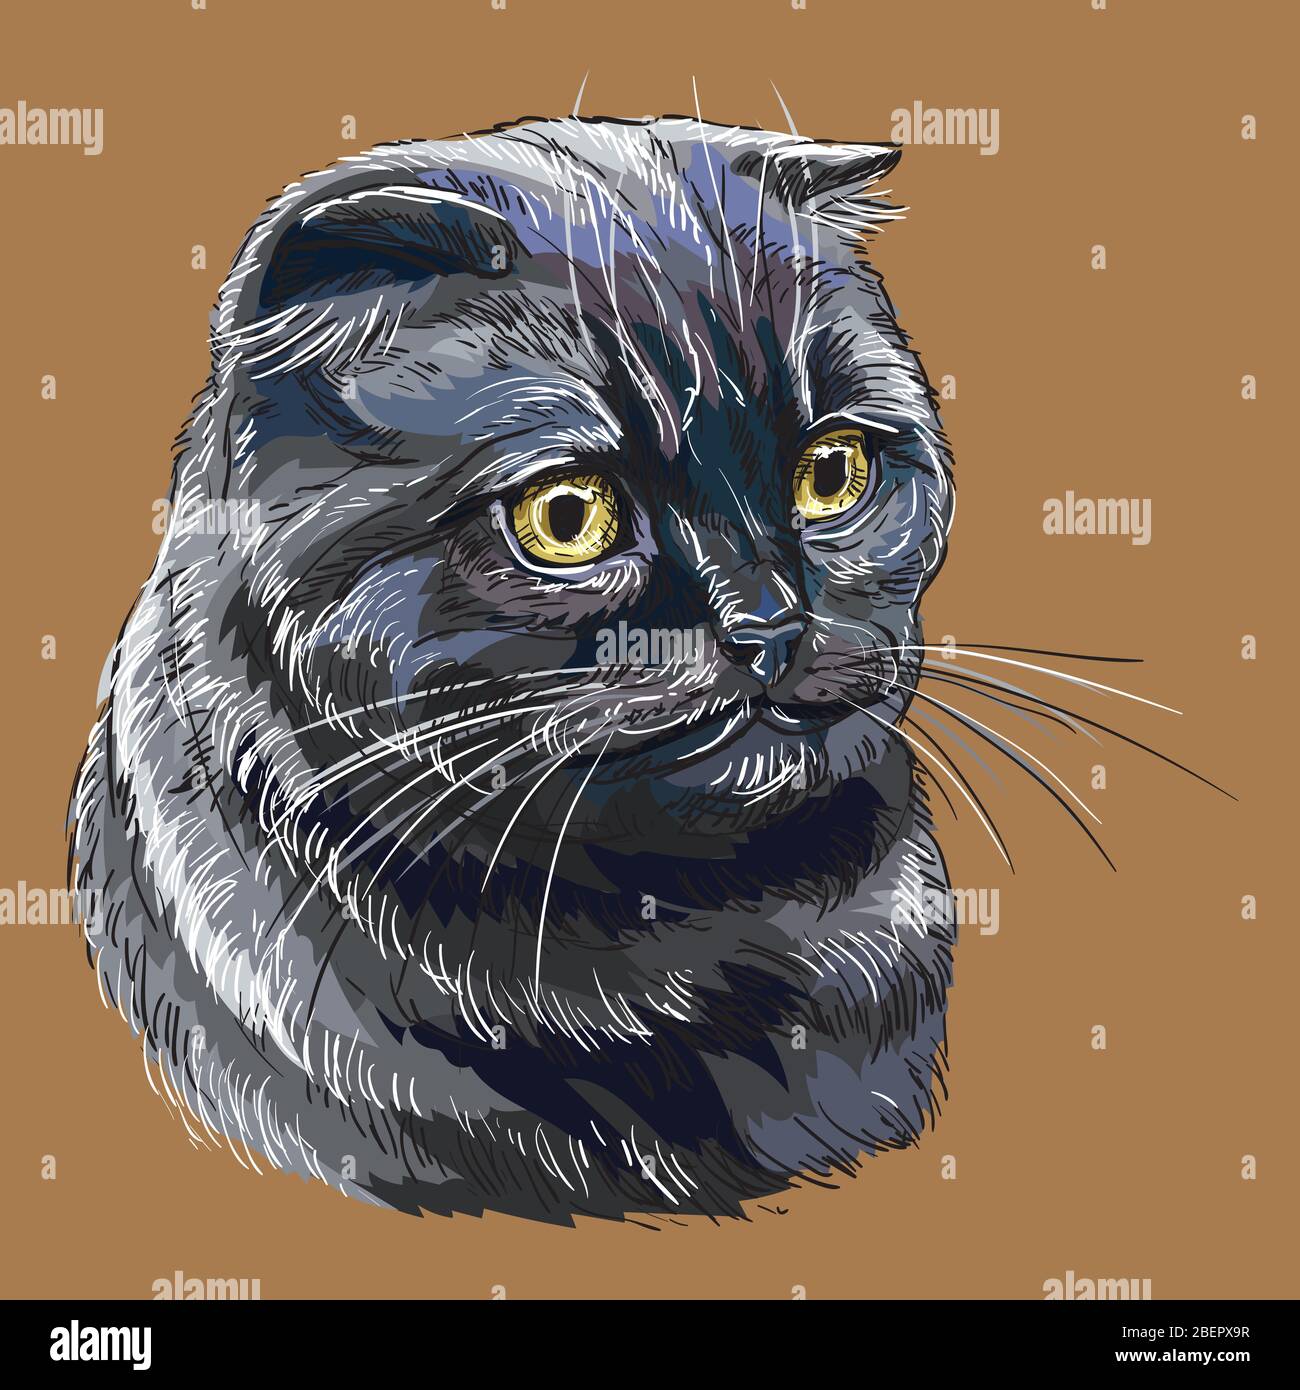 Bunte Vektor Hand Zeichnung Porträt von schottischen Falte Katze isoliert auf braunem Hintergrund. Farbenfrohe realistische Porträt der schottischen Katze. Vektorgrafik Stock Vektor